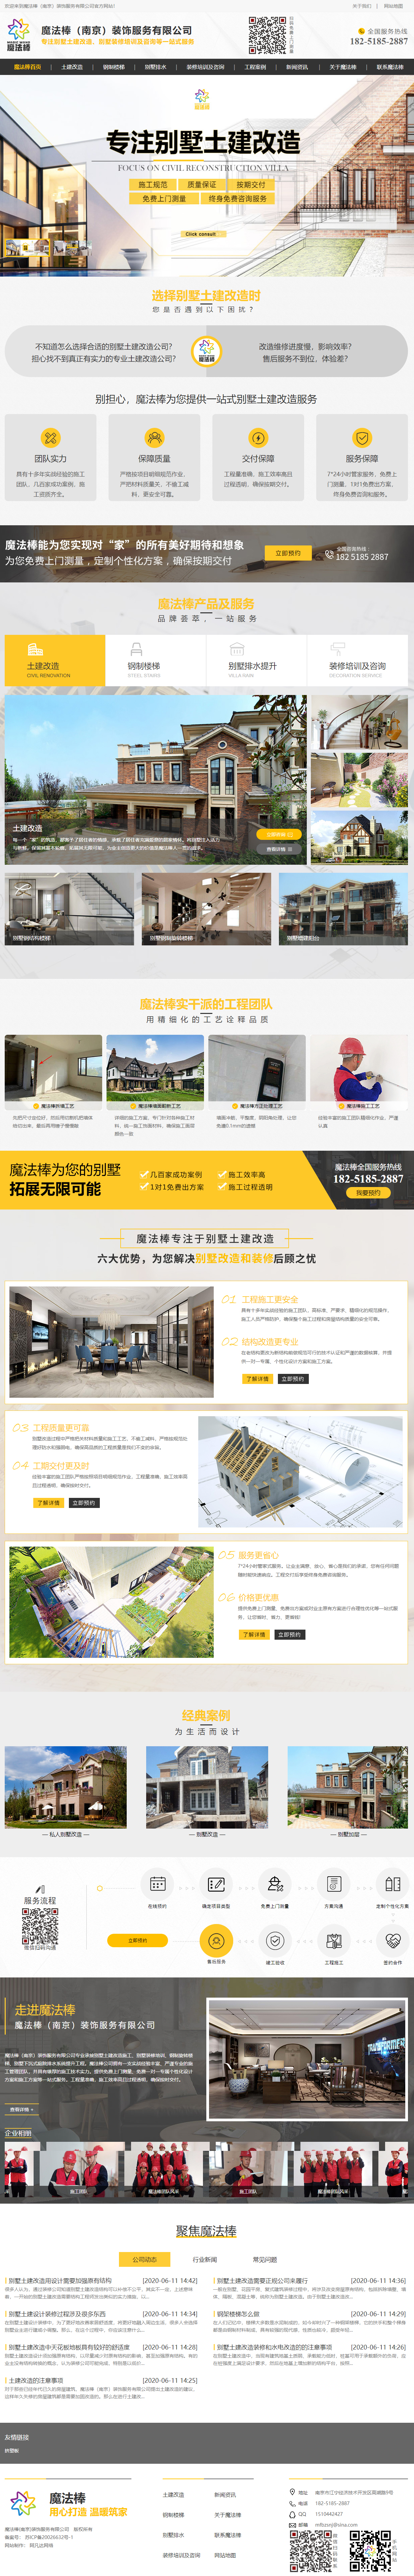 魔法棒（南京）裝飾服務有限公司營銷型網站設計案例 PC端預覽圖